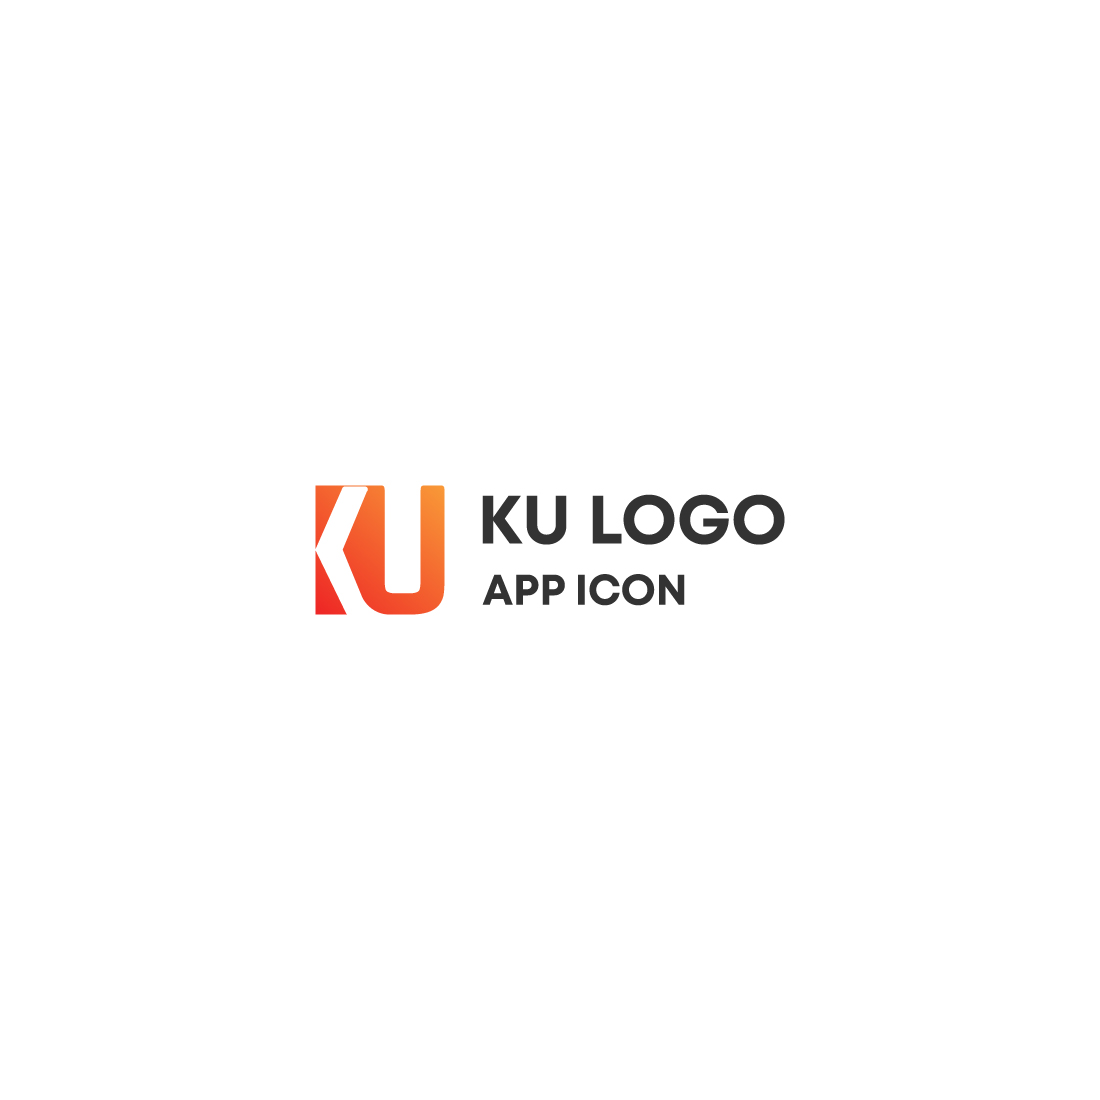 KU logo cover image.